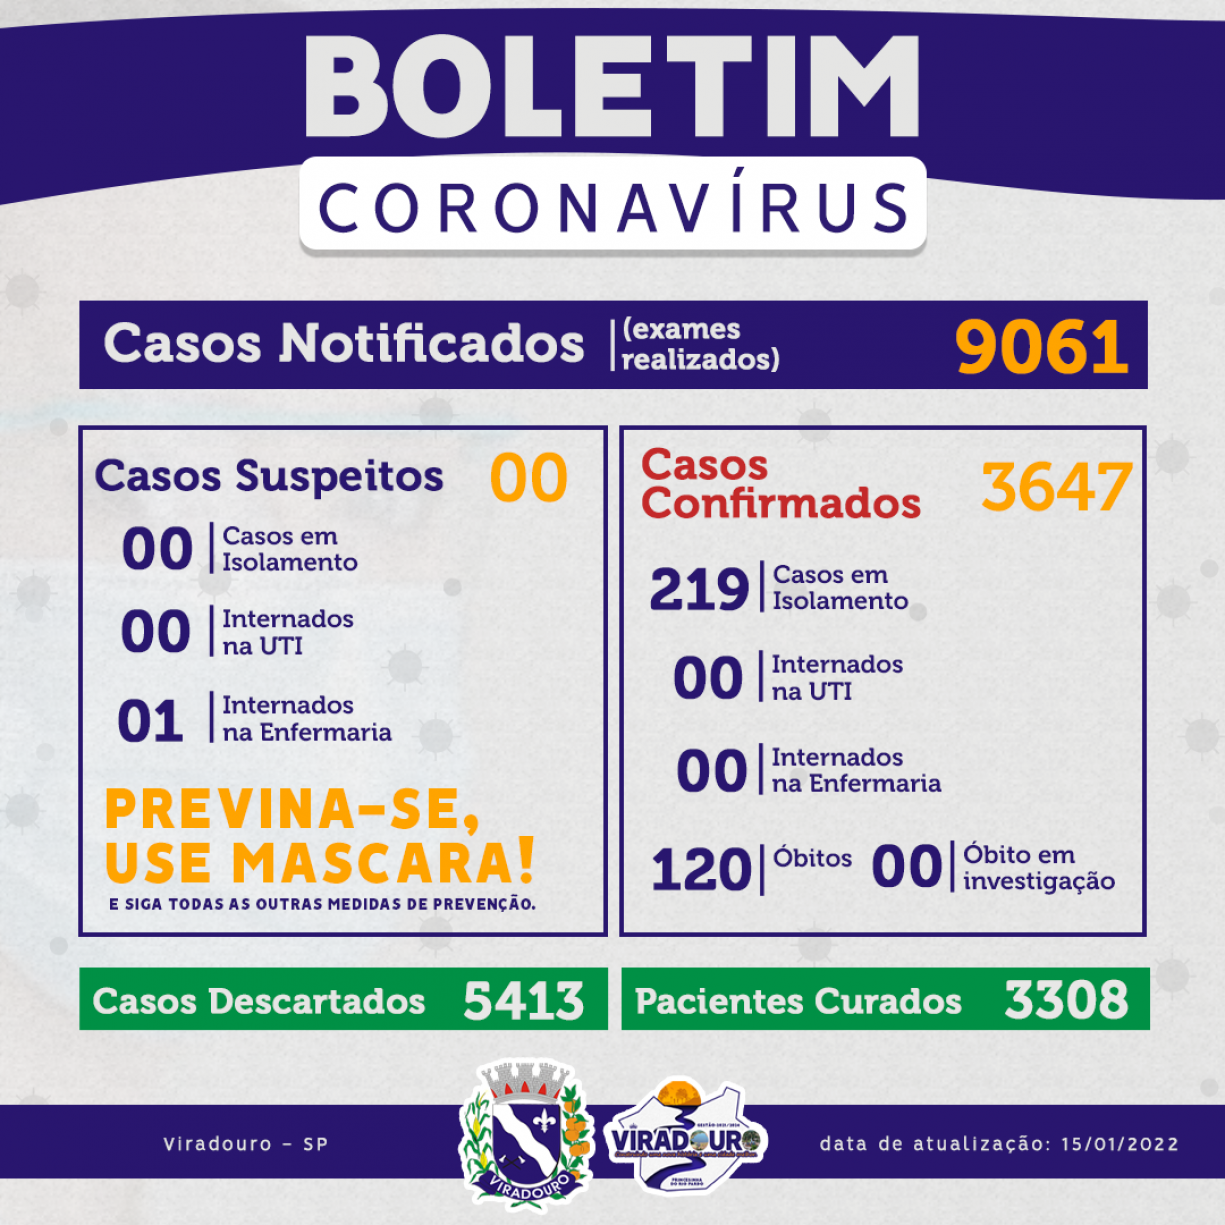 CORONAVÍRUS: BOLETIM EPIDEMIOLÓGICO (ATUALIZAÇÃO 15/01/2022)